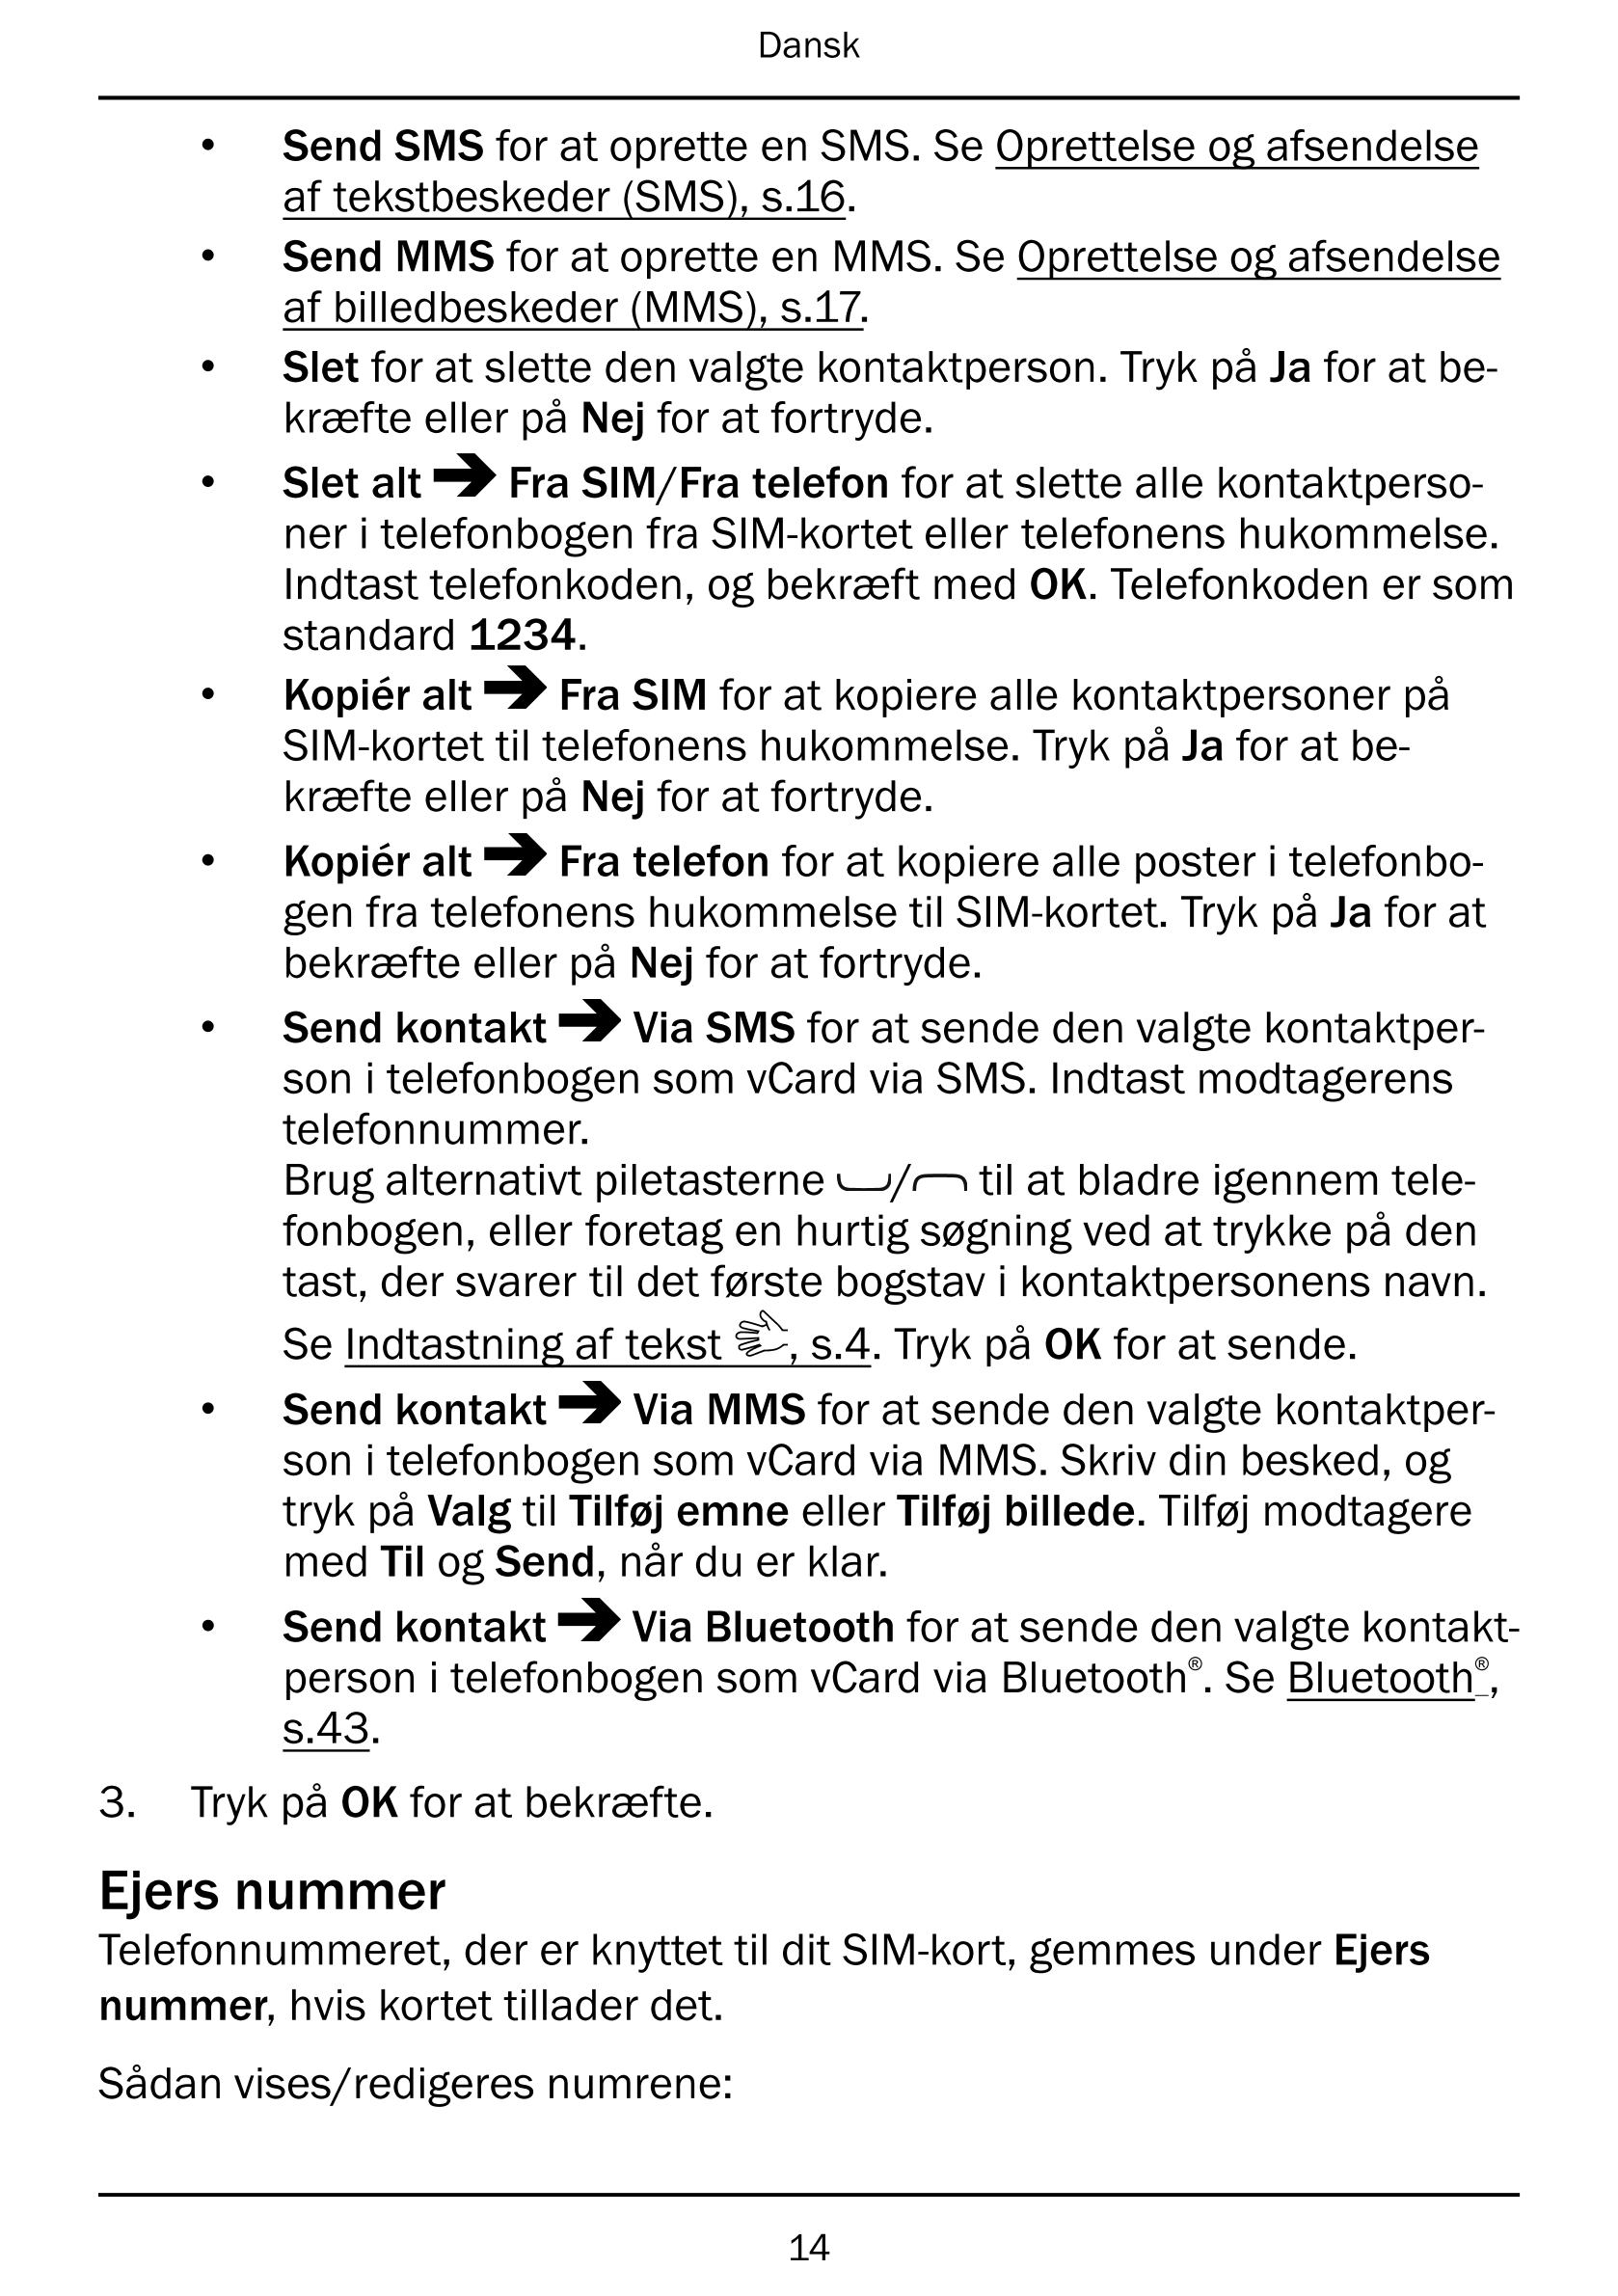 Dansk
• Send SMS for at oprette en SMS. Se Oprettelse og afsendelse
af tekstbeskeder (SMS), s.16.
• Send MMS for at oprette en M